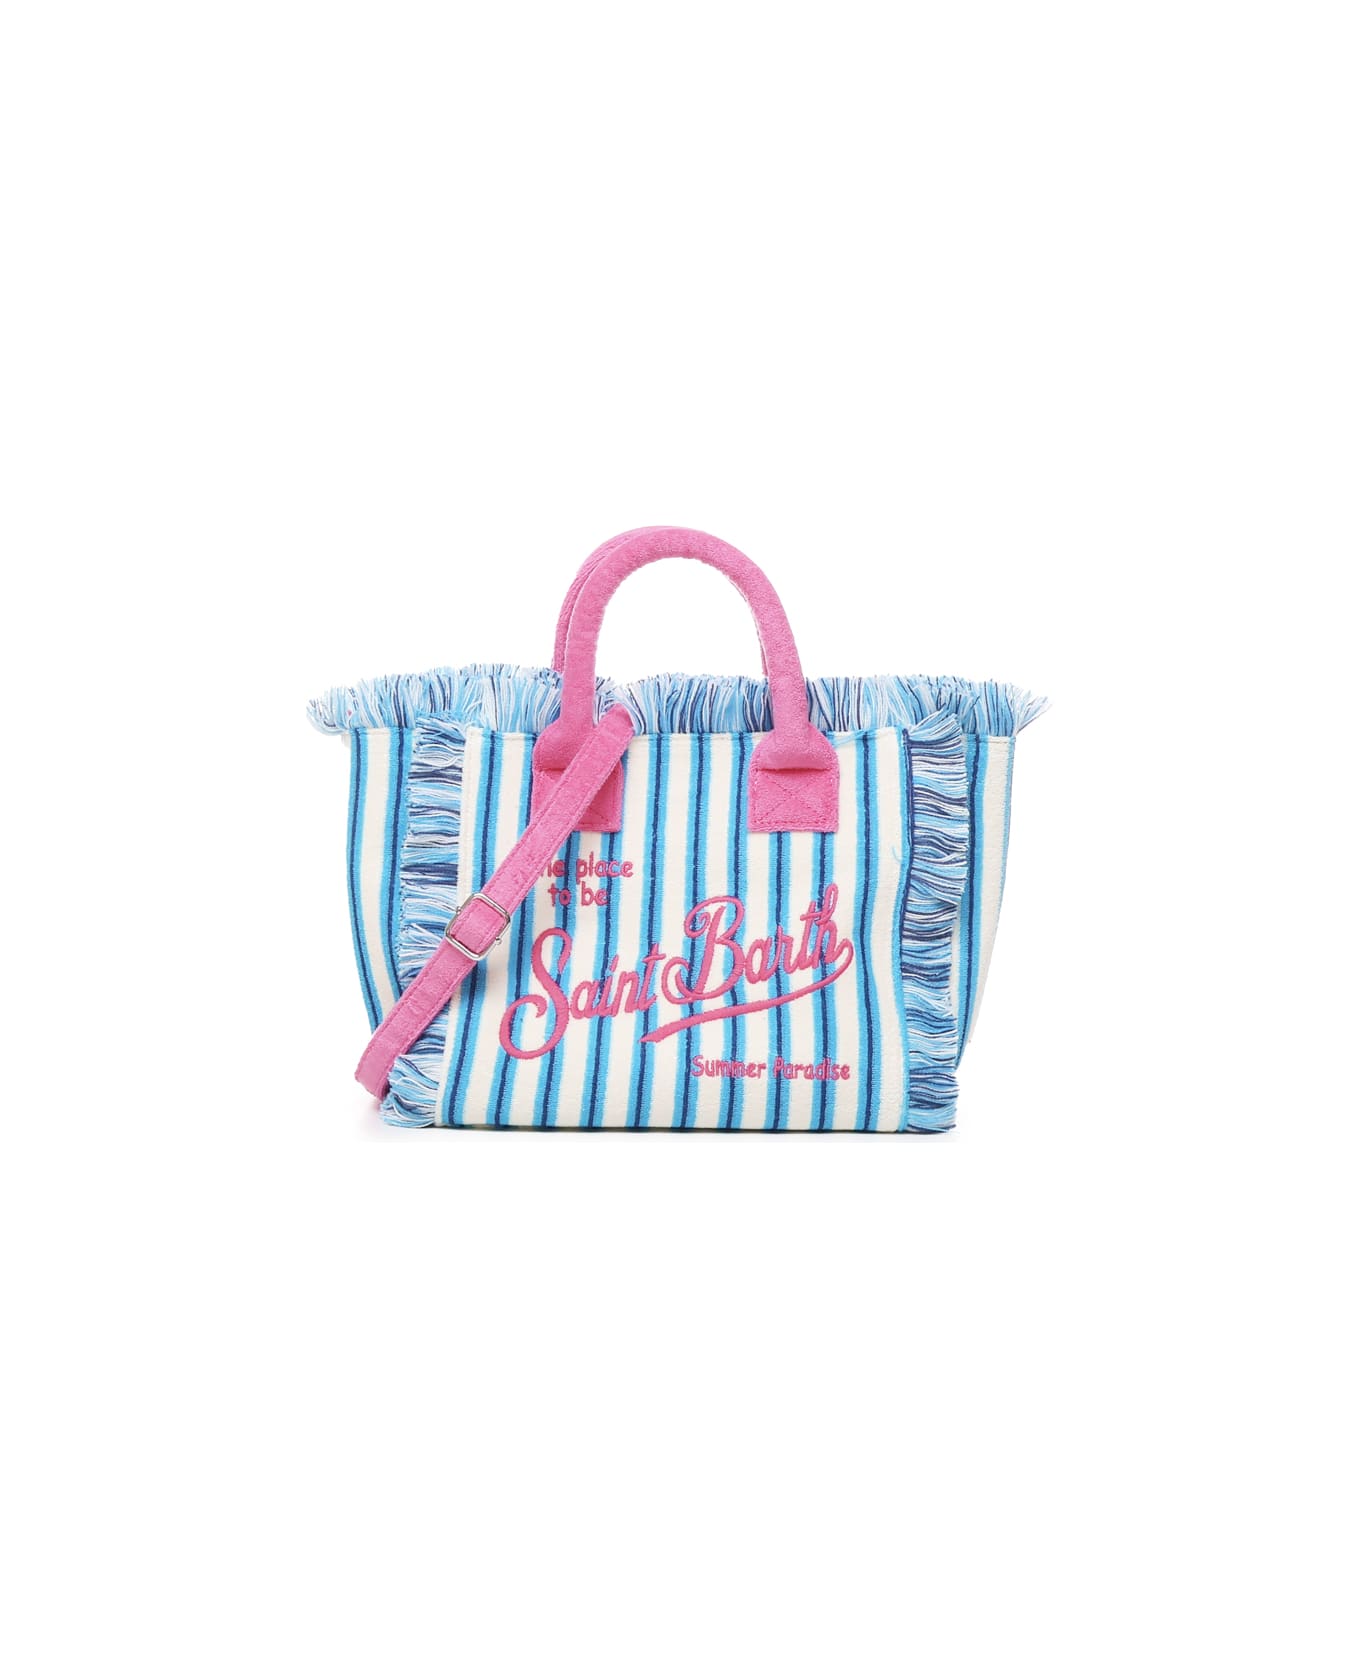 MC2 Saint Barth Colette Bag With Handles And Shoulder Strap - Azzurro, azzurro chiaro, rosa